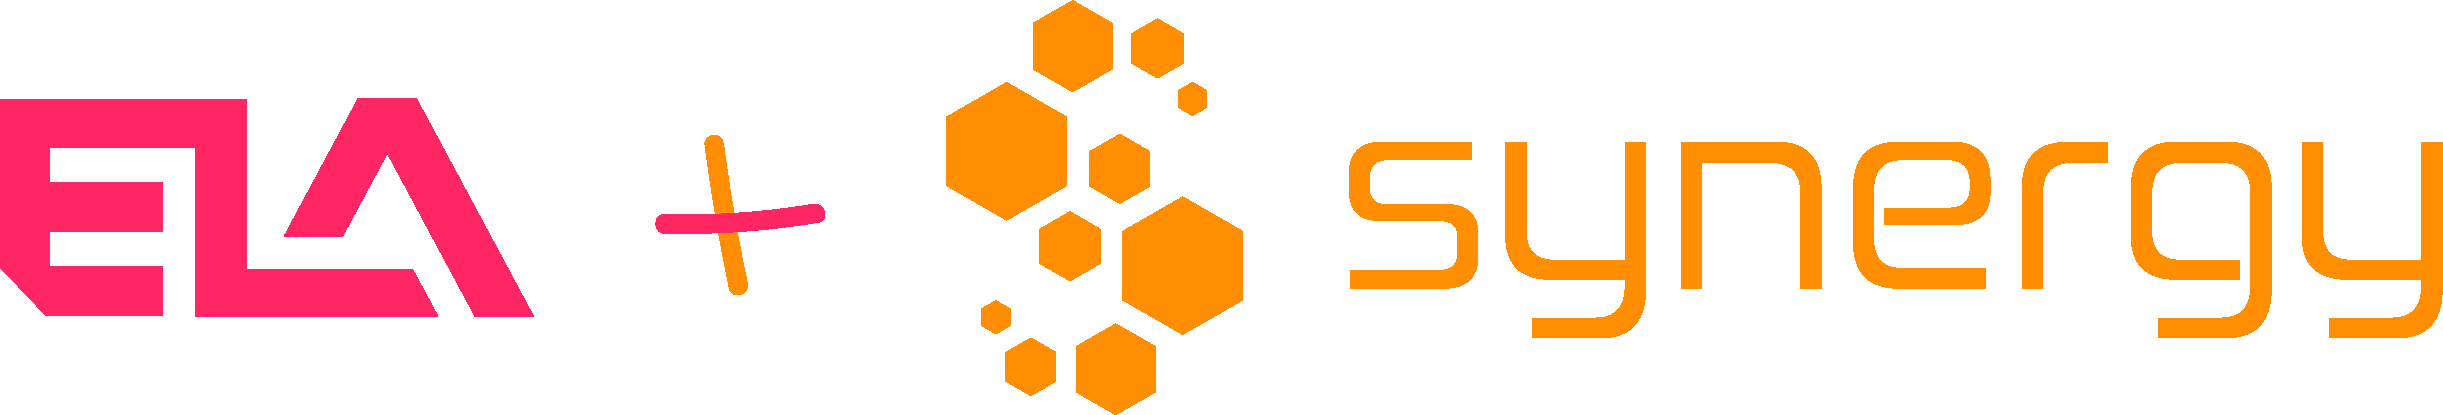 ELA Synergy logo trimmed.png